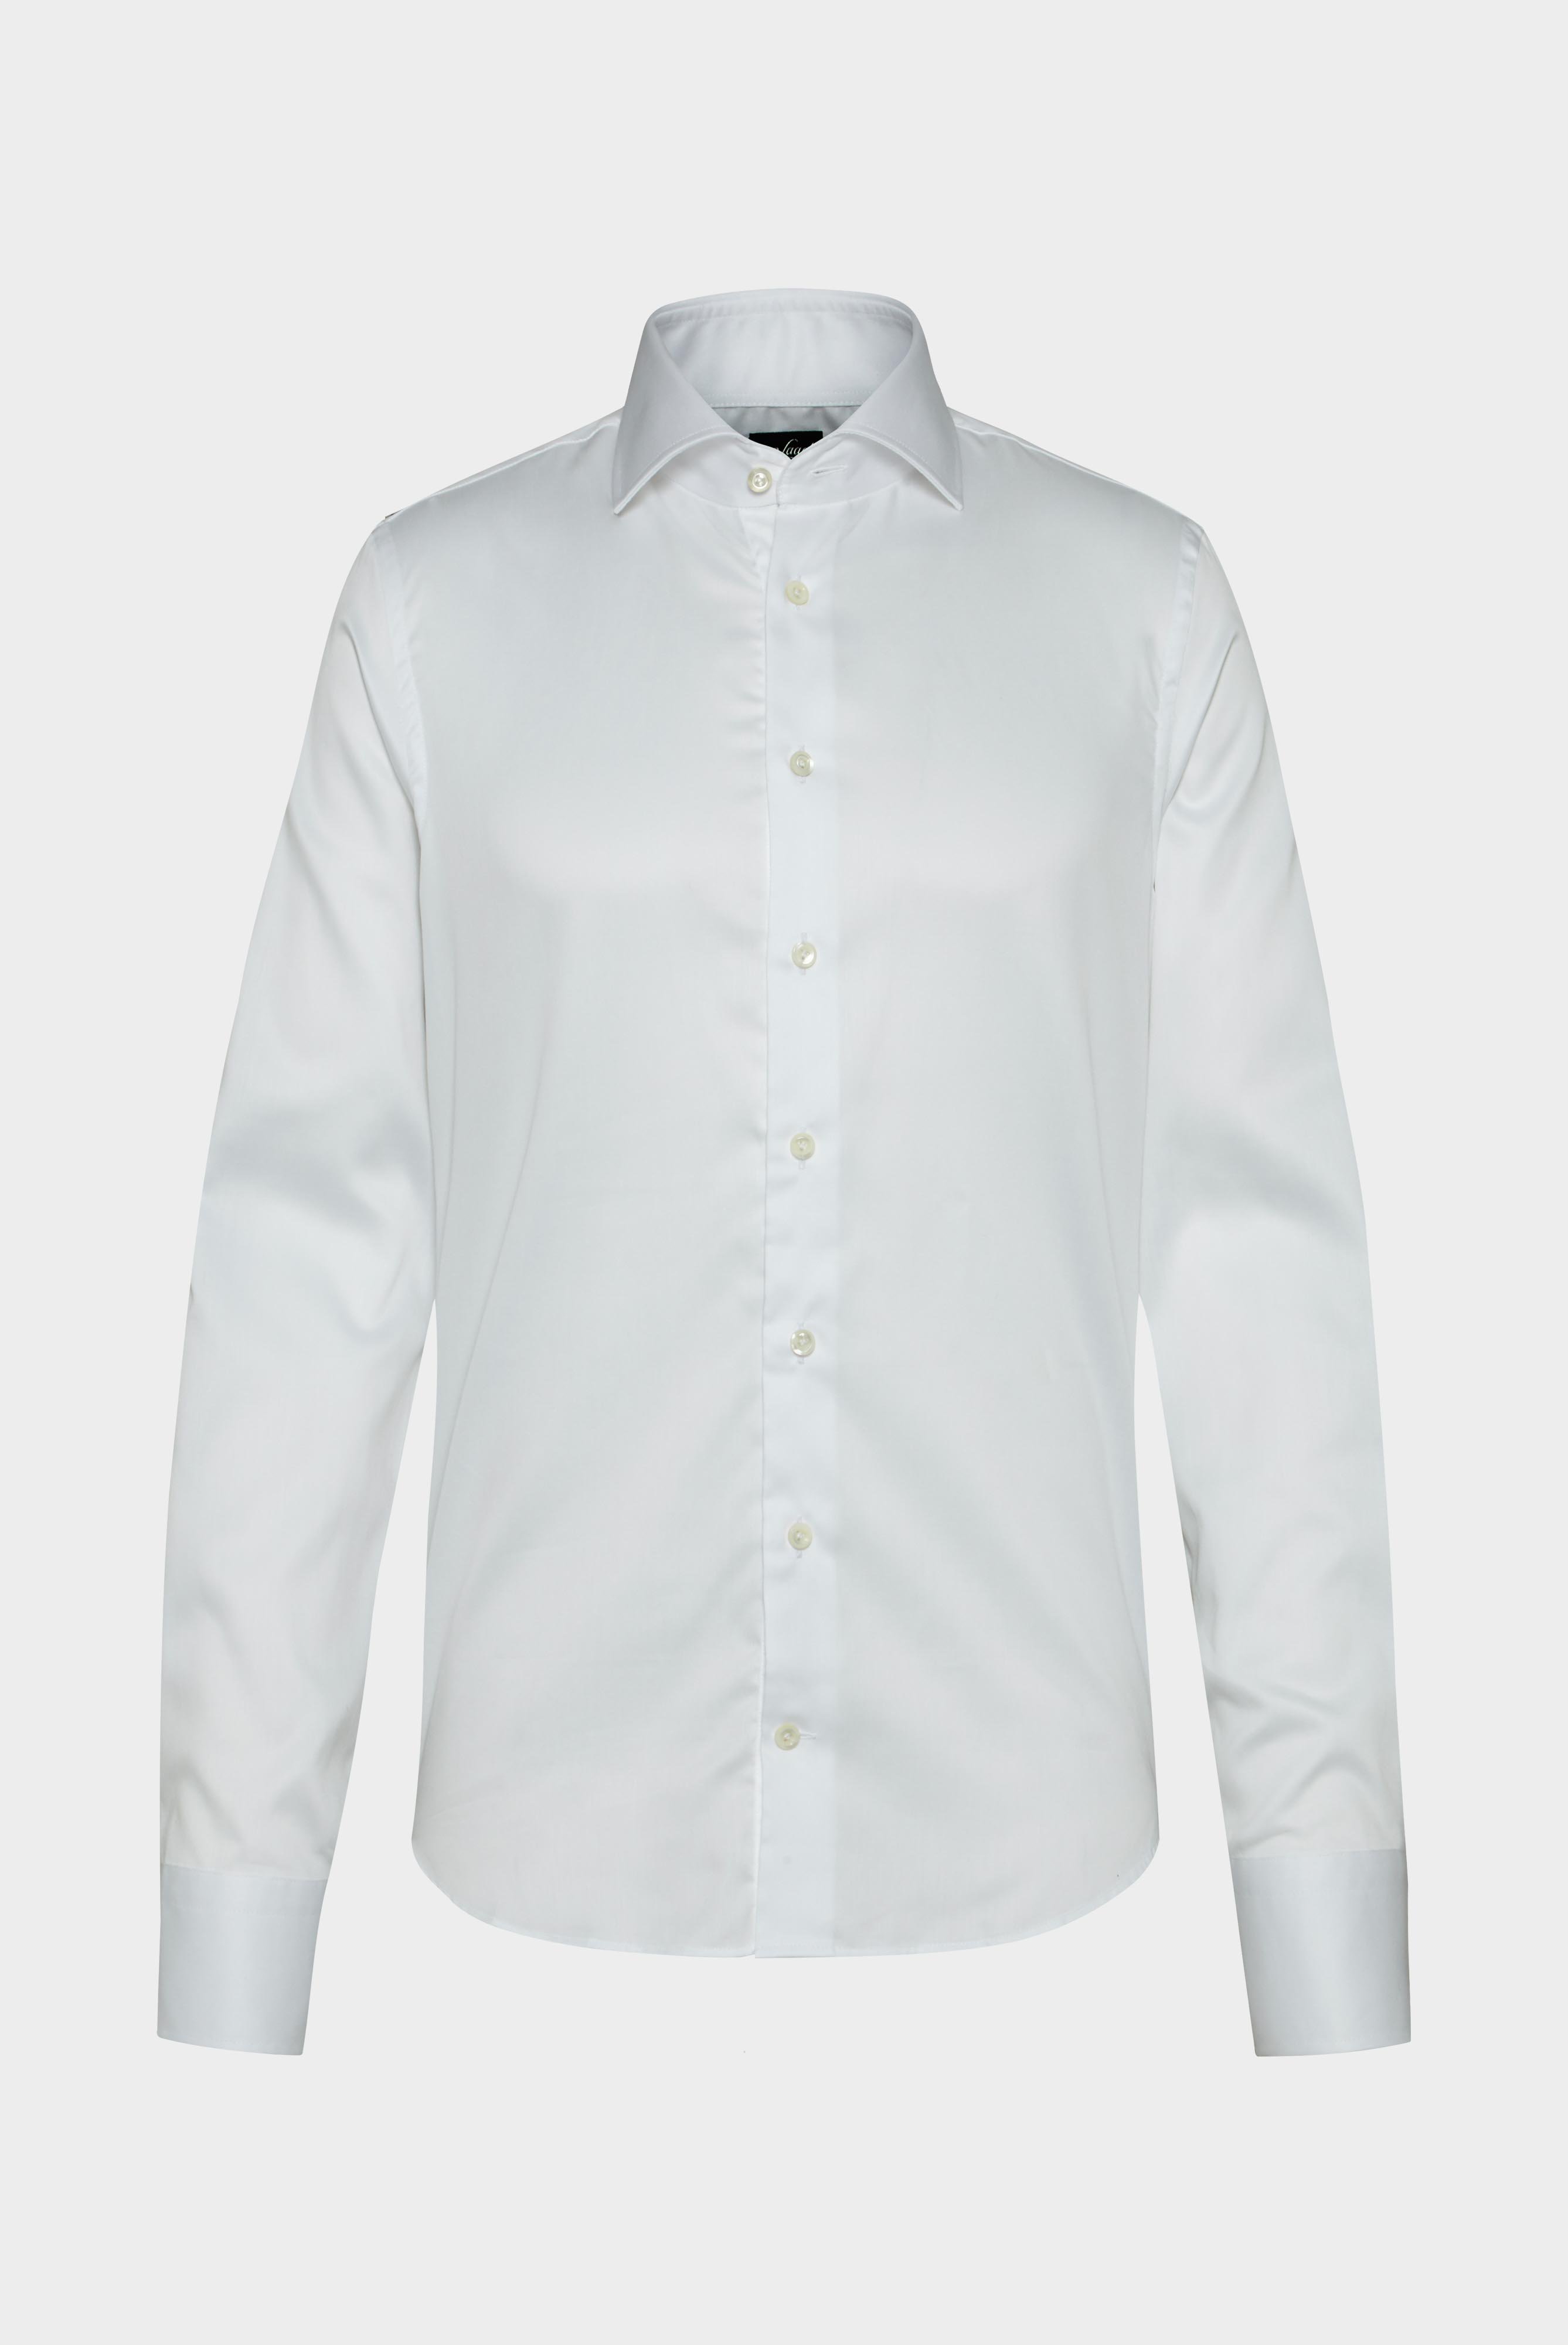 Bügelleichte Hemden+Bügelfreies Twill Hemd Slim Fit+20.2019.BQ.132241.000.38